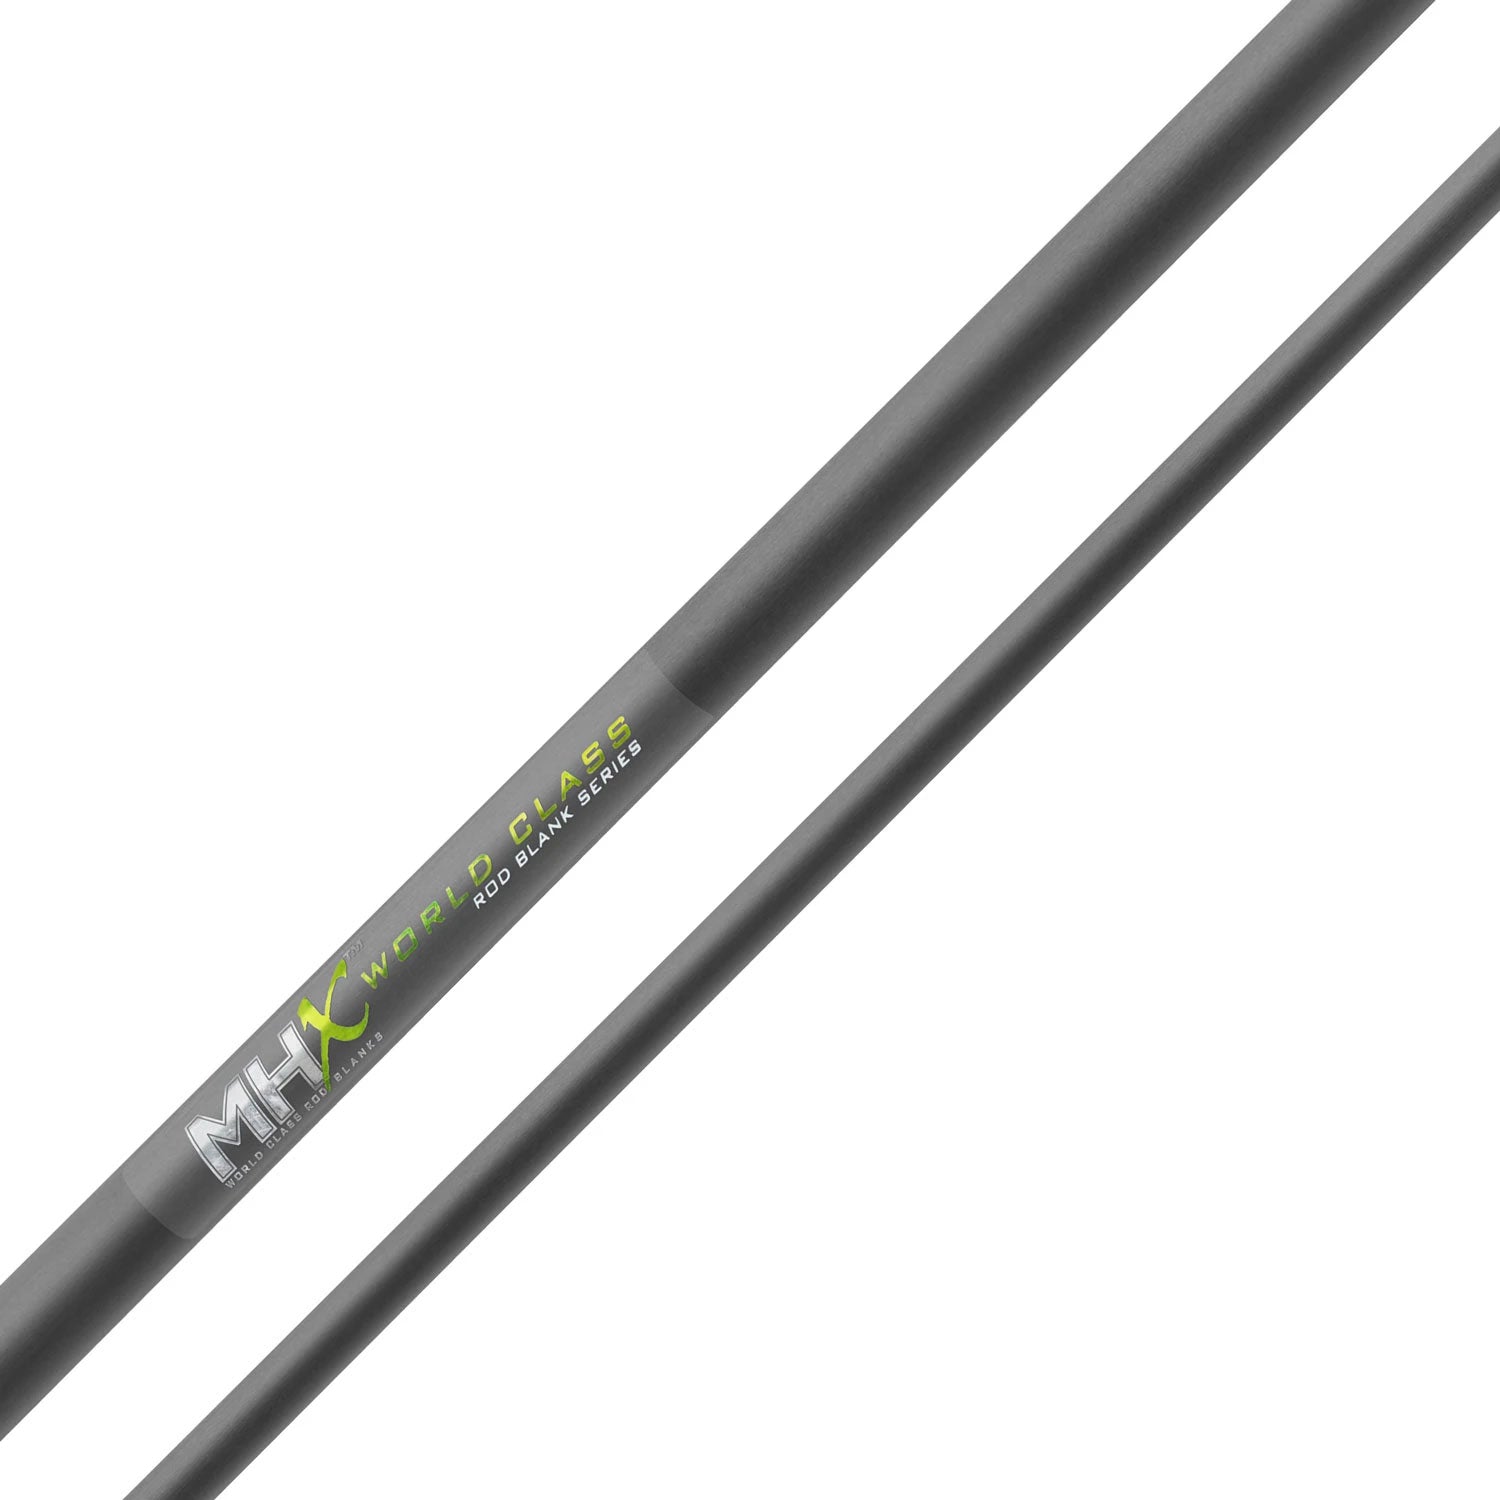 MHX 9'6 Medium Steelhead Rod Blank - ST1143-MHX